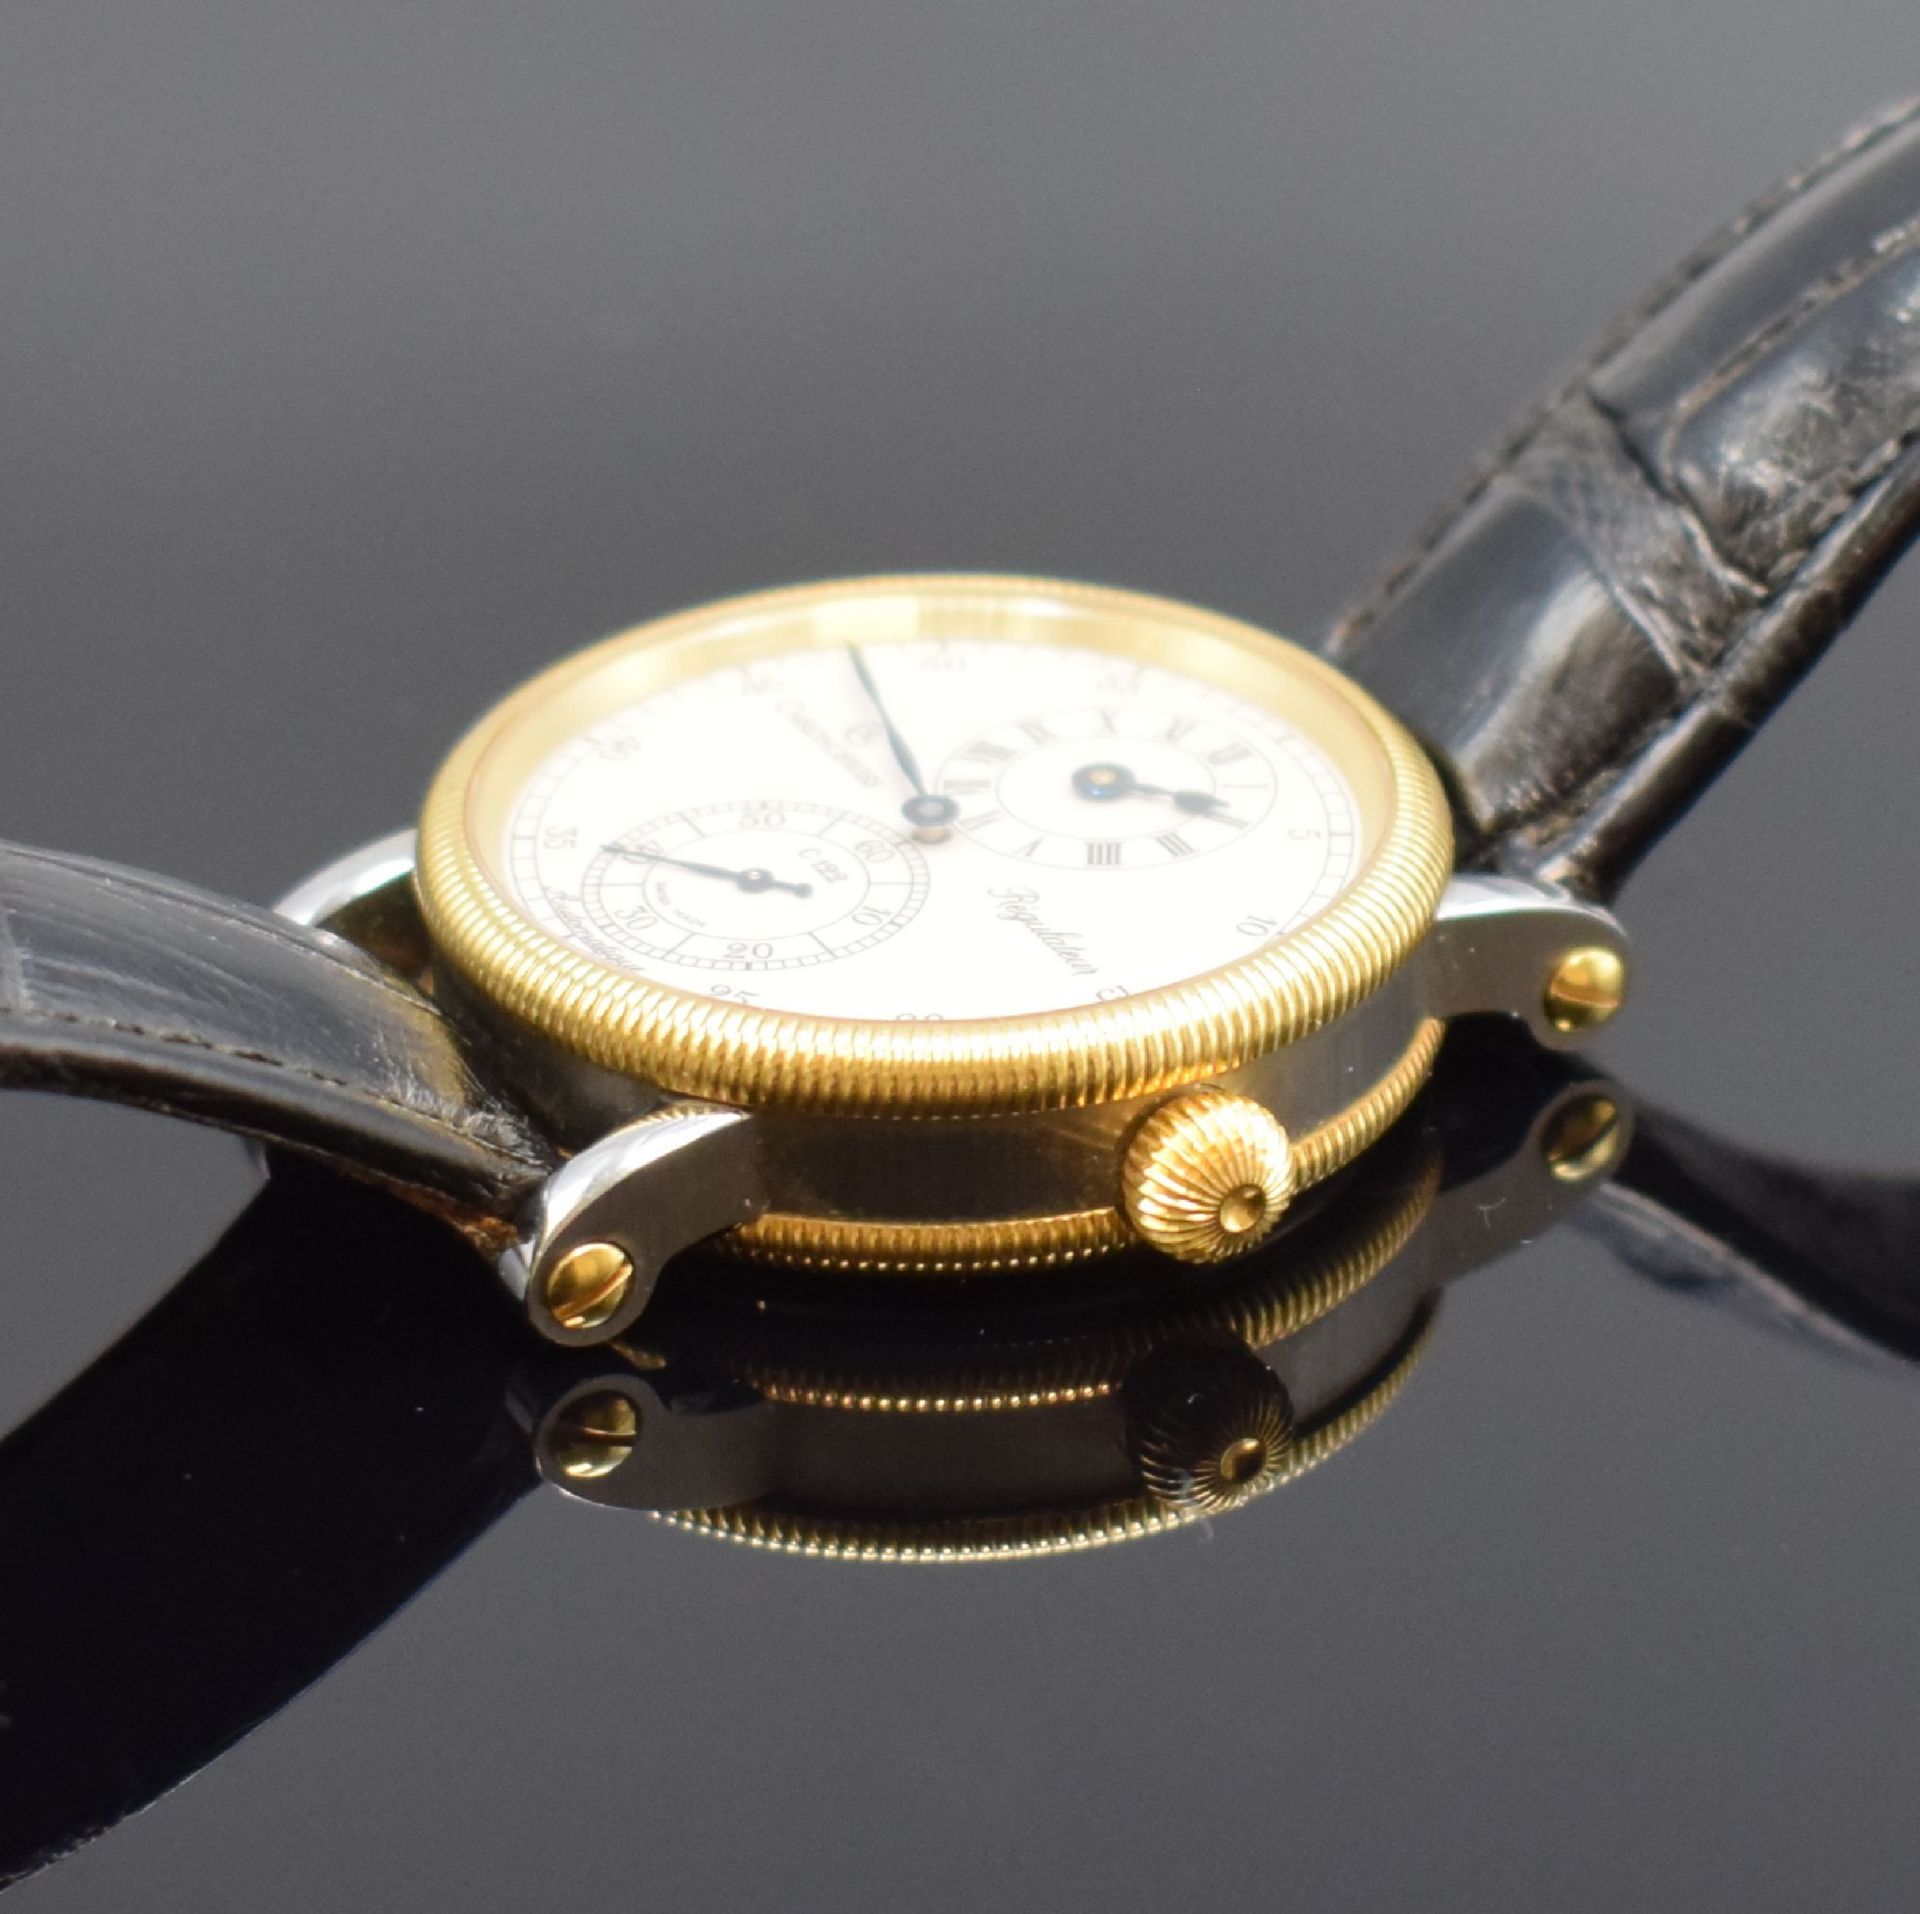 CHRONOSWISS Regulateur Medium-Armbanduhr in Stahl und Gold - Bild 4 aus 6